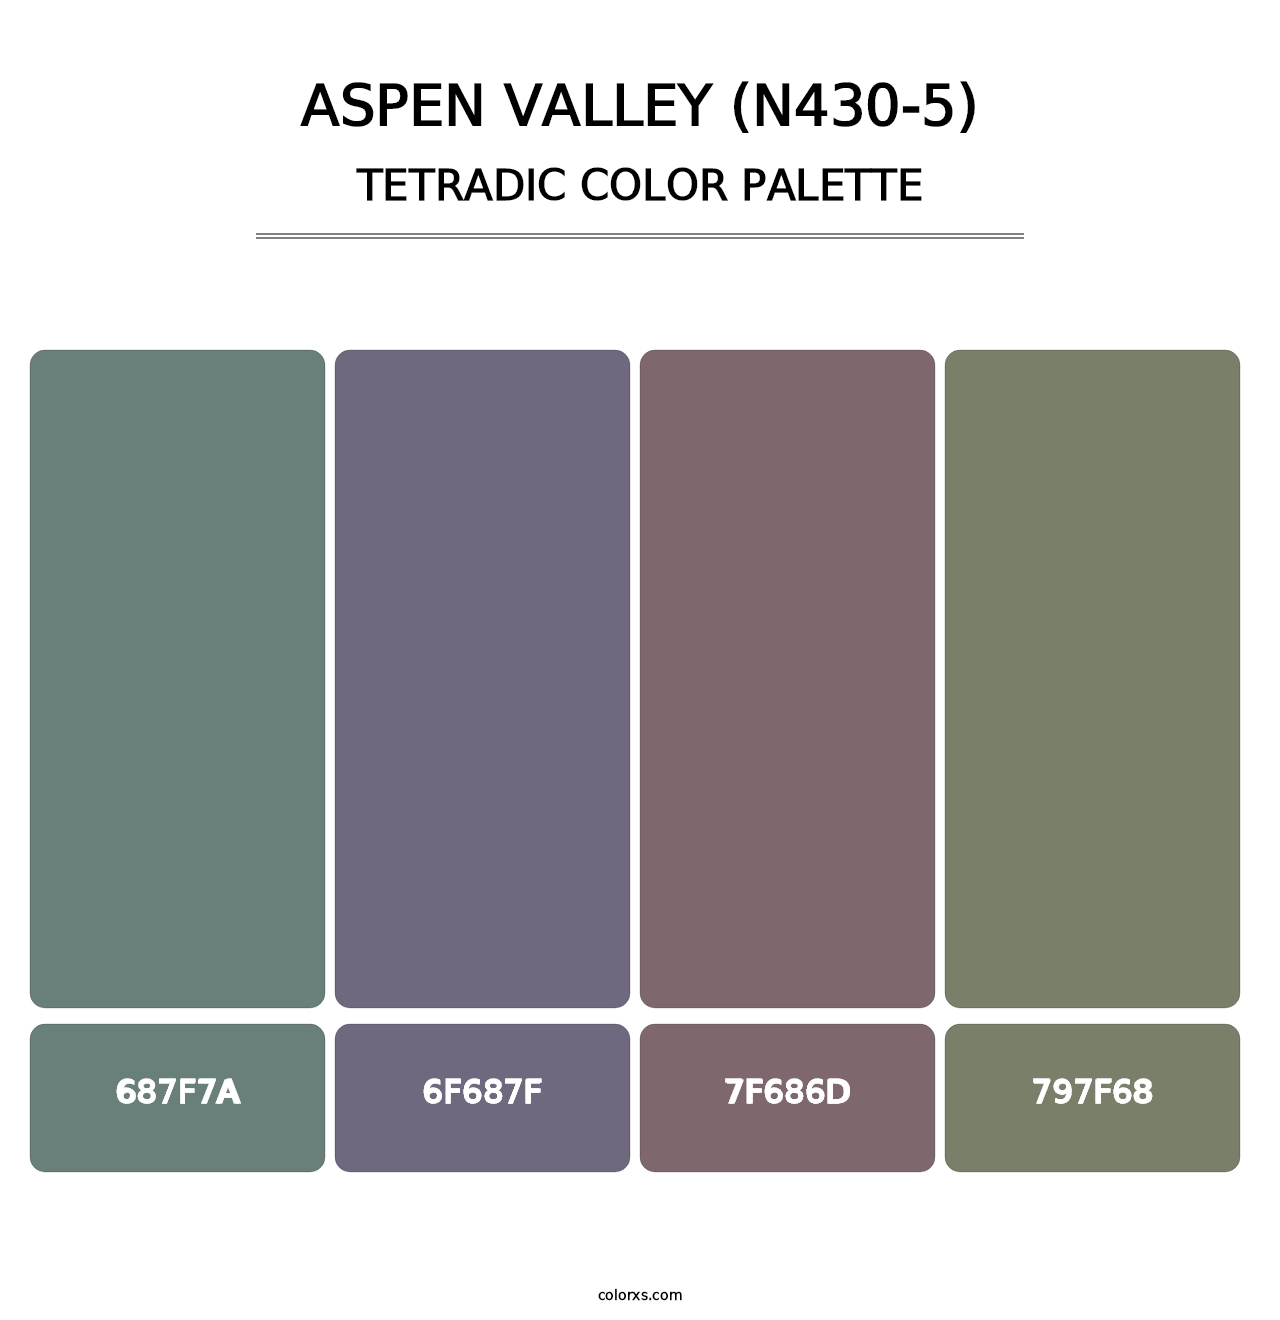 Aspen Valley (N430-5) - Tetradic Color Palette